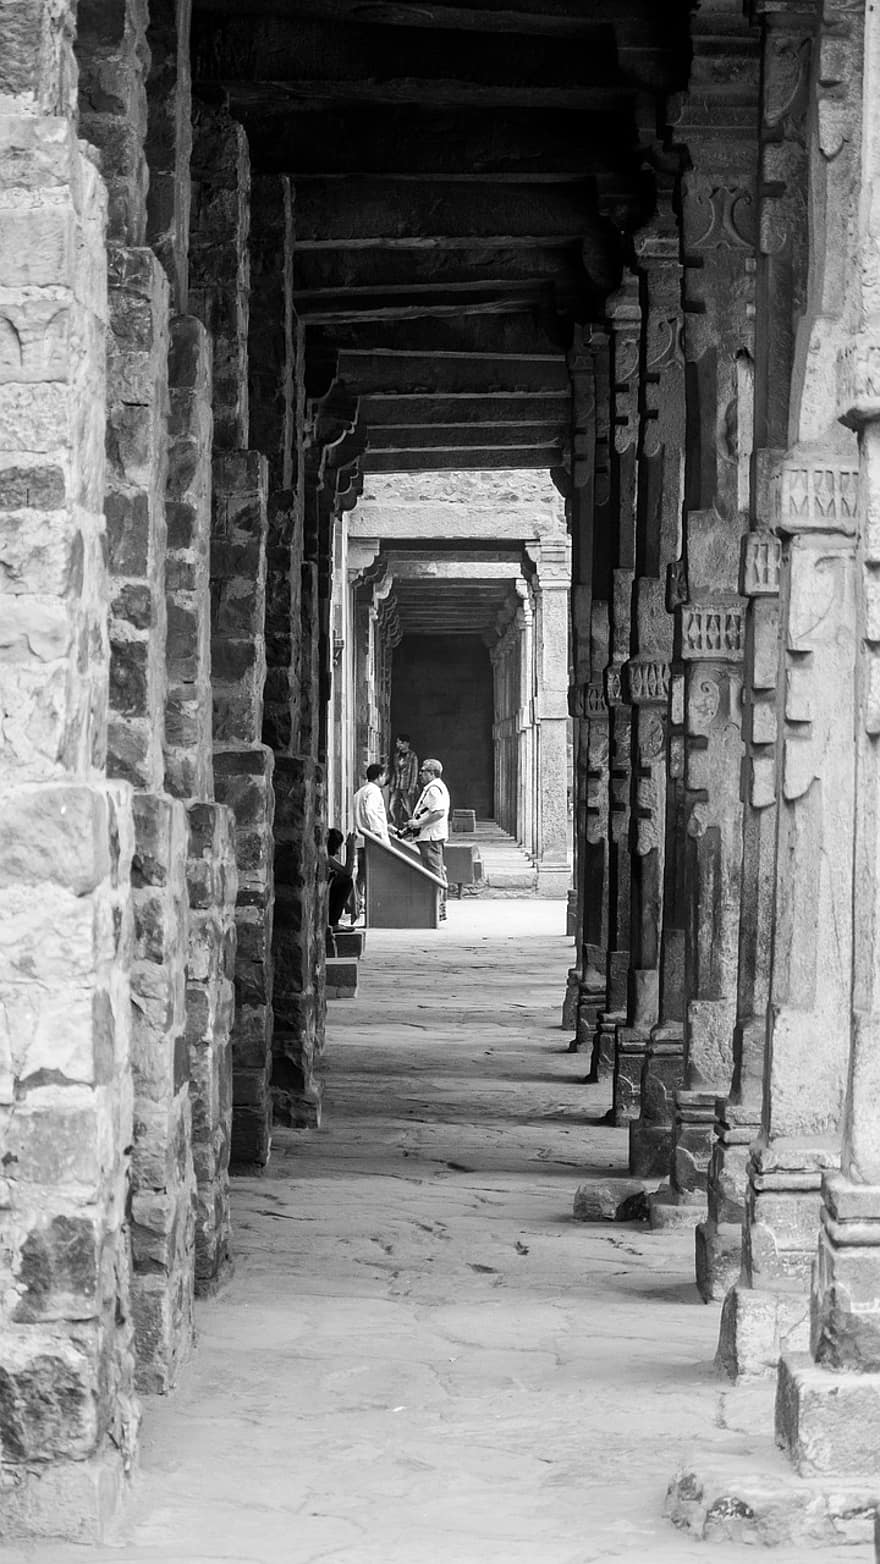 costruzione, pilastri, vecchia Delhi, architettura, all'aperto, strada, passerella, colonne, monocromatico, urbano